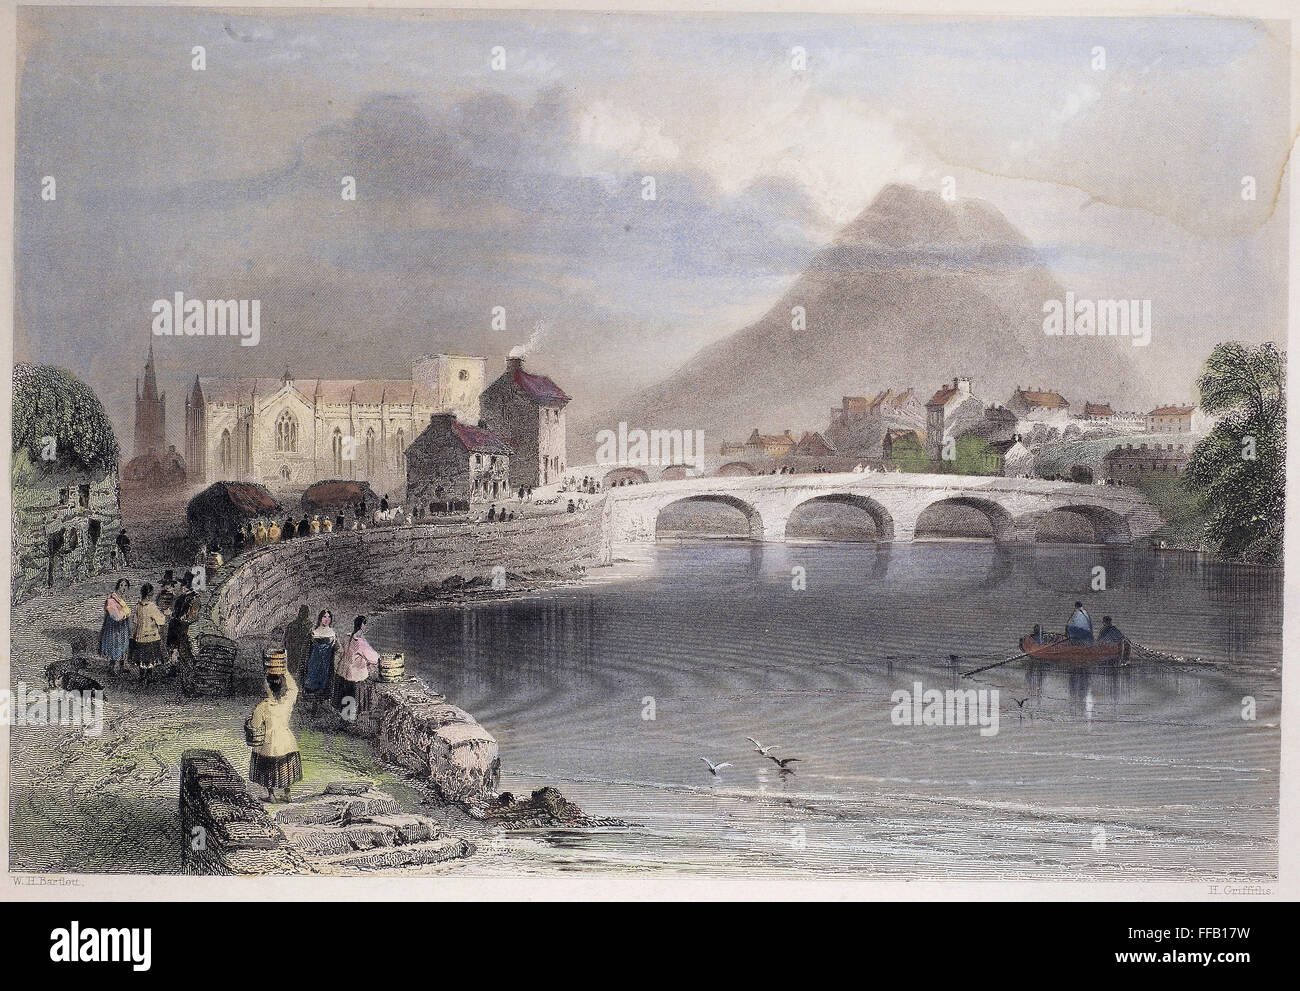 L'IRLANDE, 19e siècle. /NBallina, Comté de Mayo, Irlande. Gravure sur acier, anglais, c1840, après William Henry Bartlett. Banque D'Images